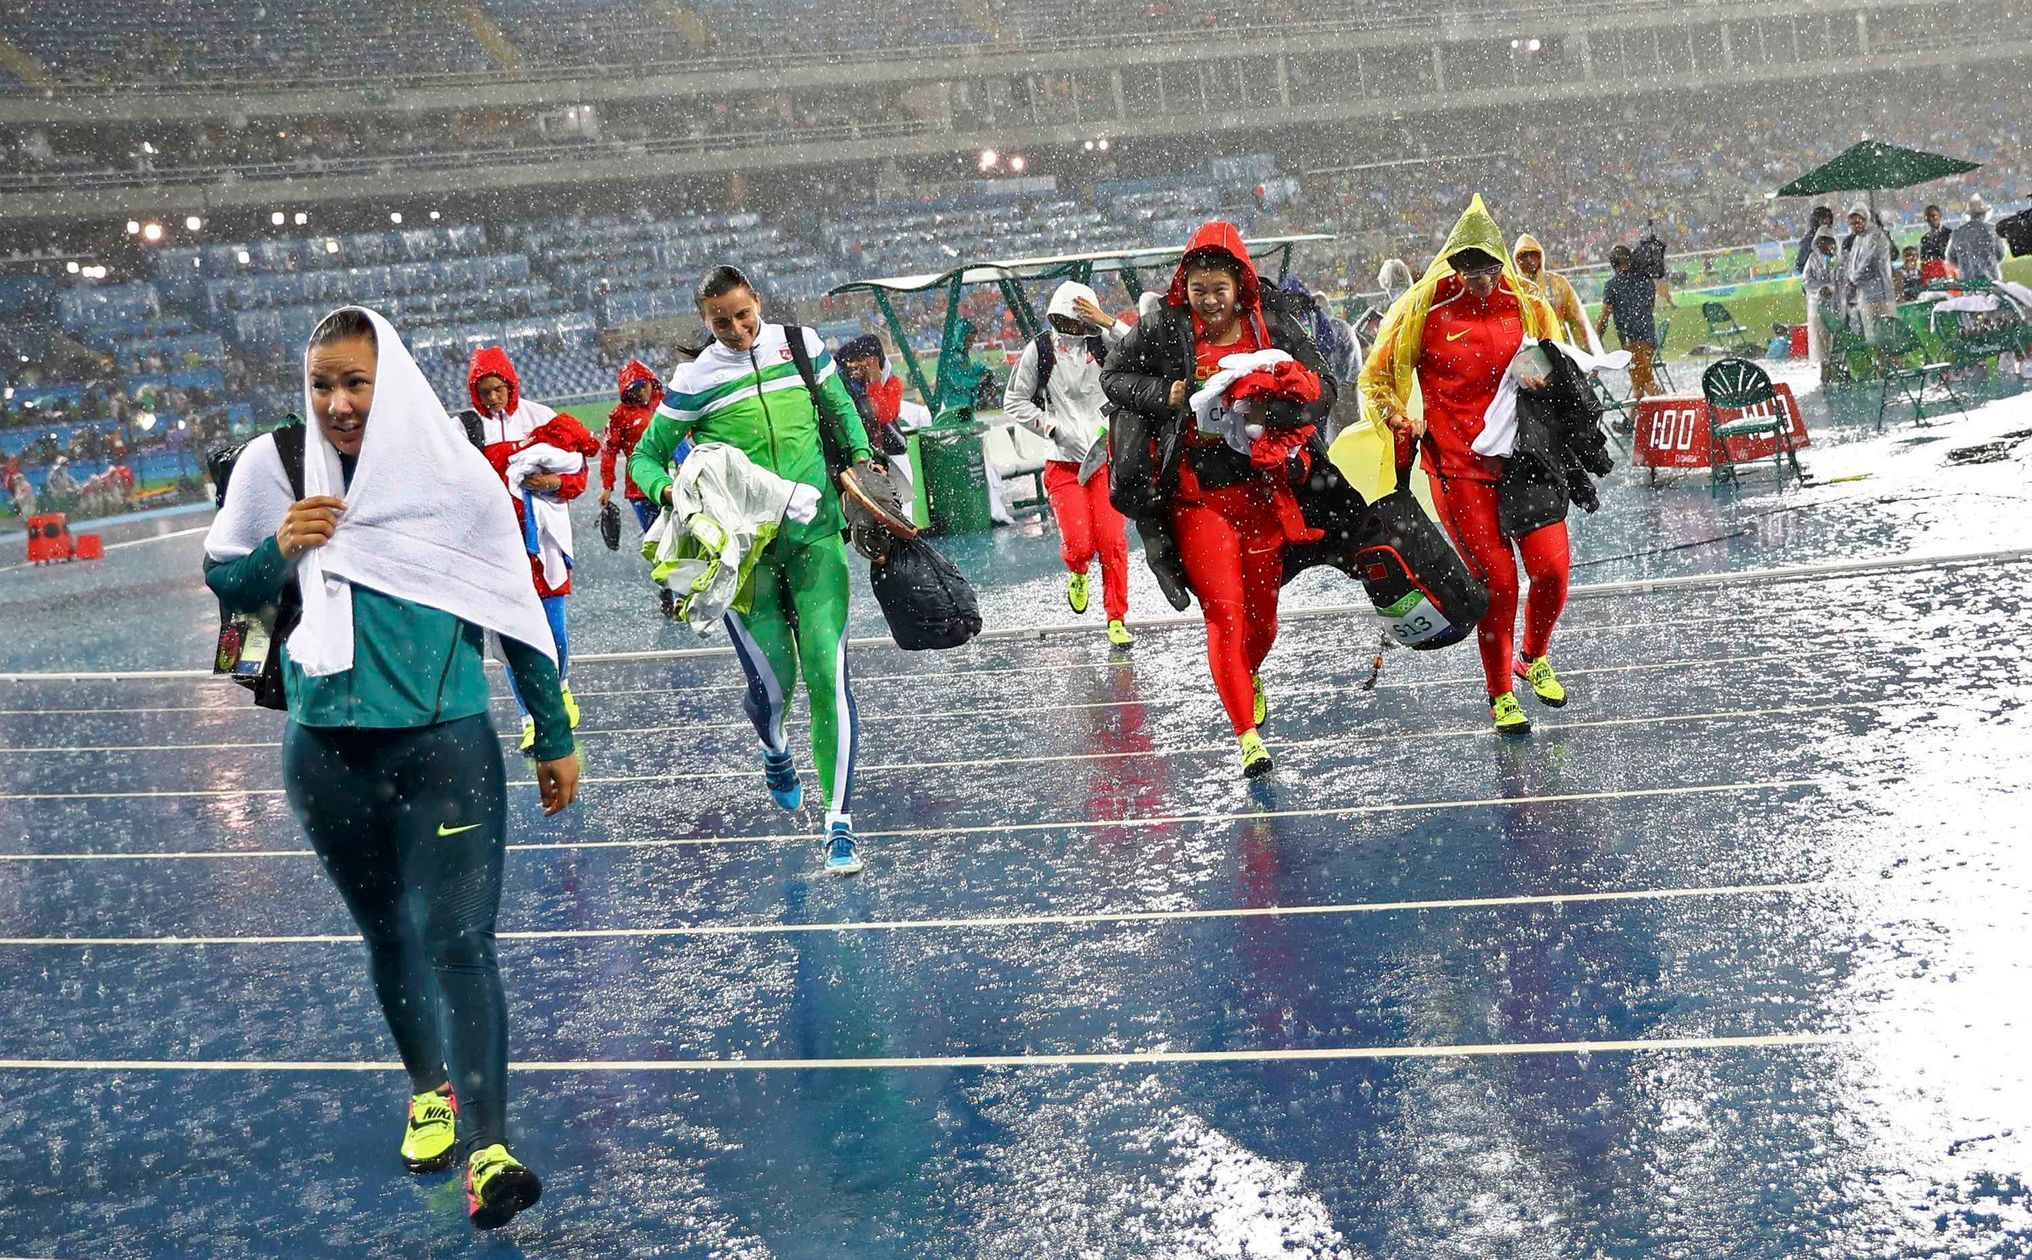 OH 2016, atletika, hod diskem: diskařky utíkají před deštěm